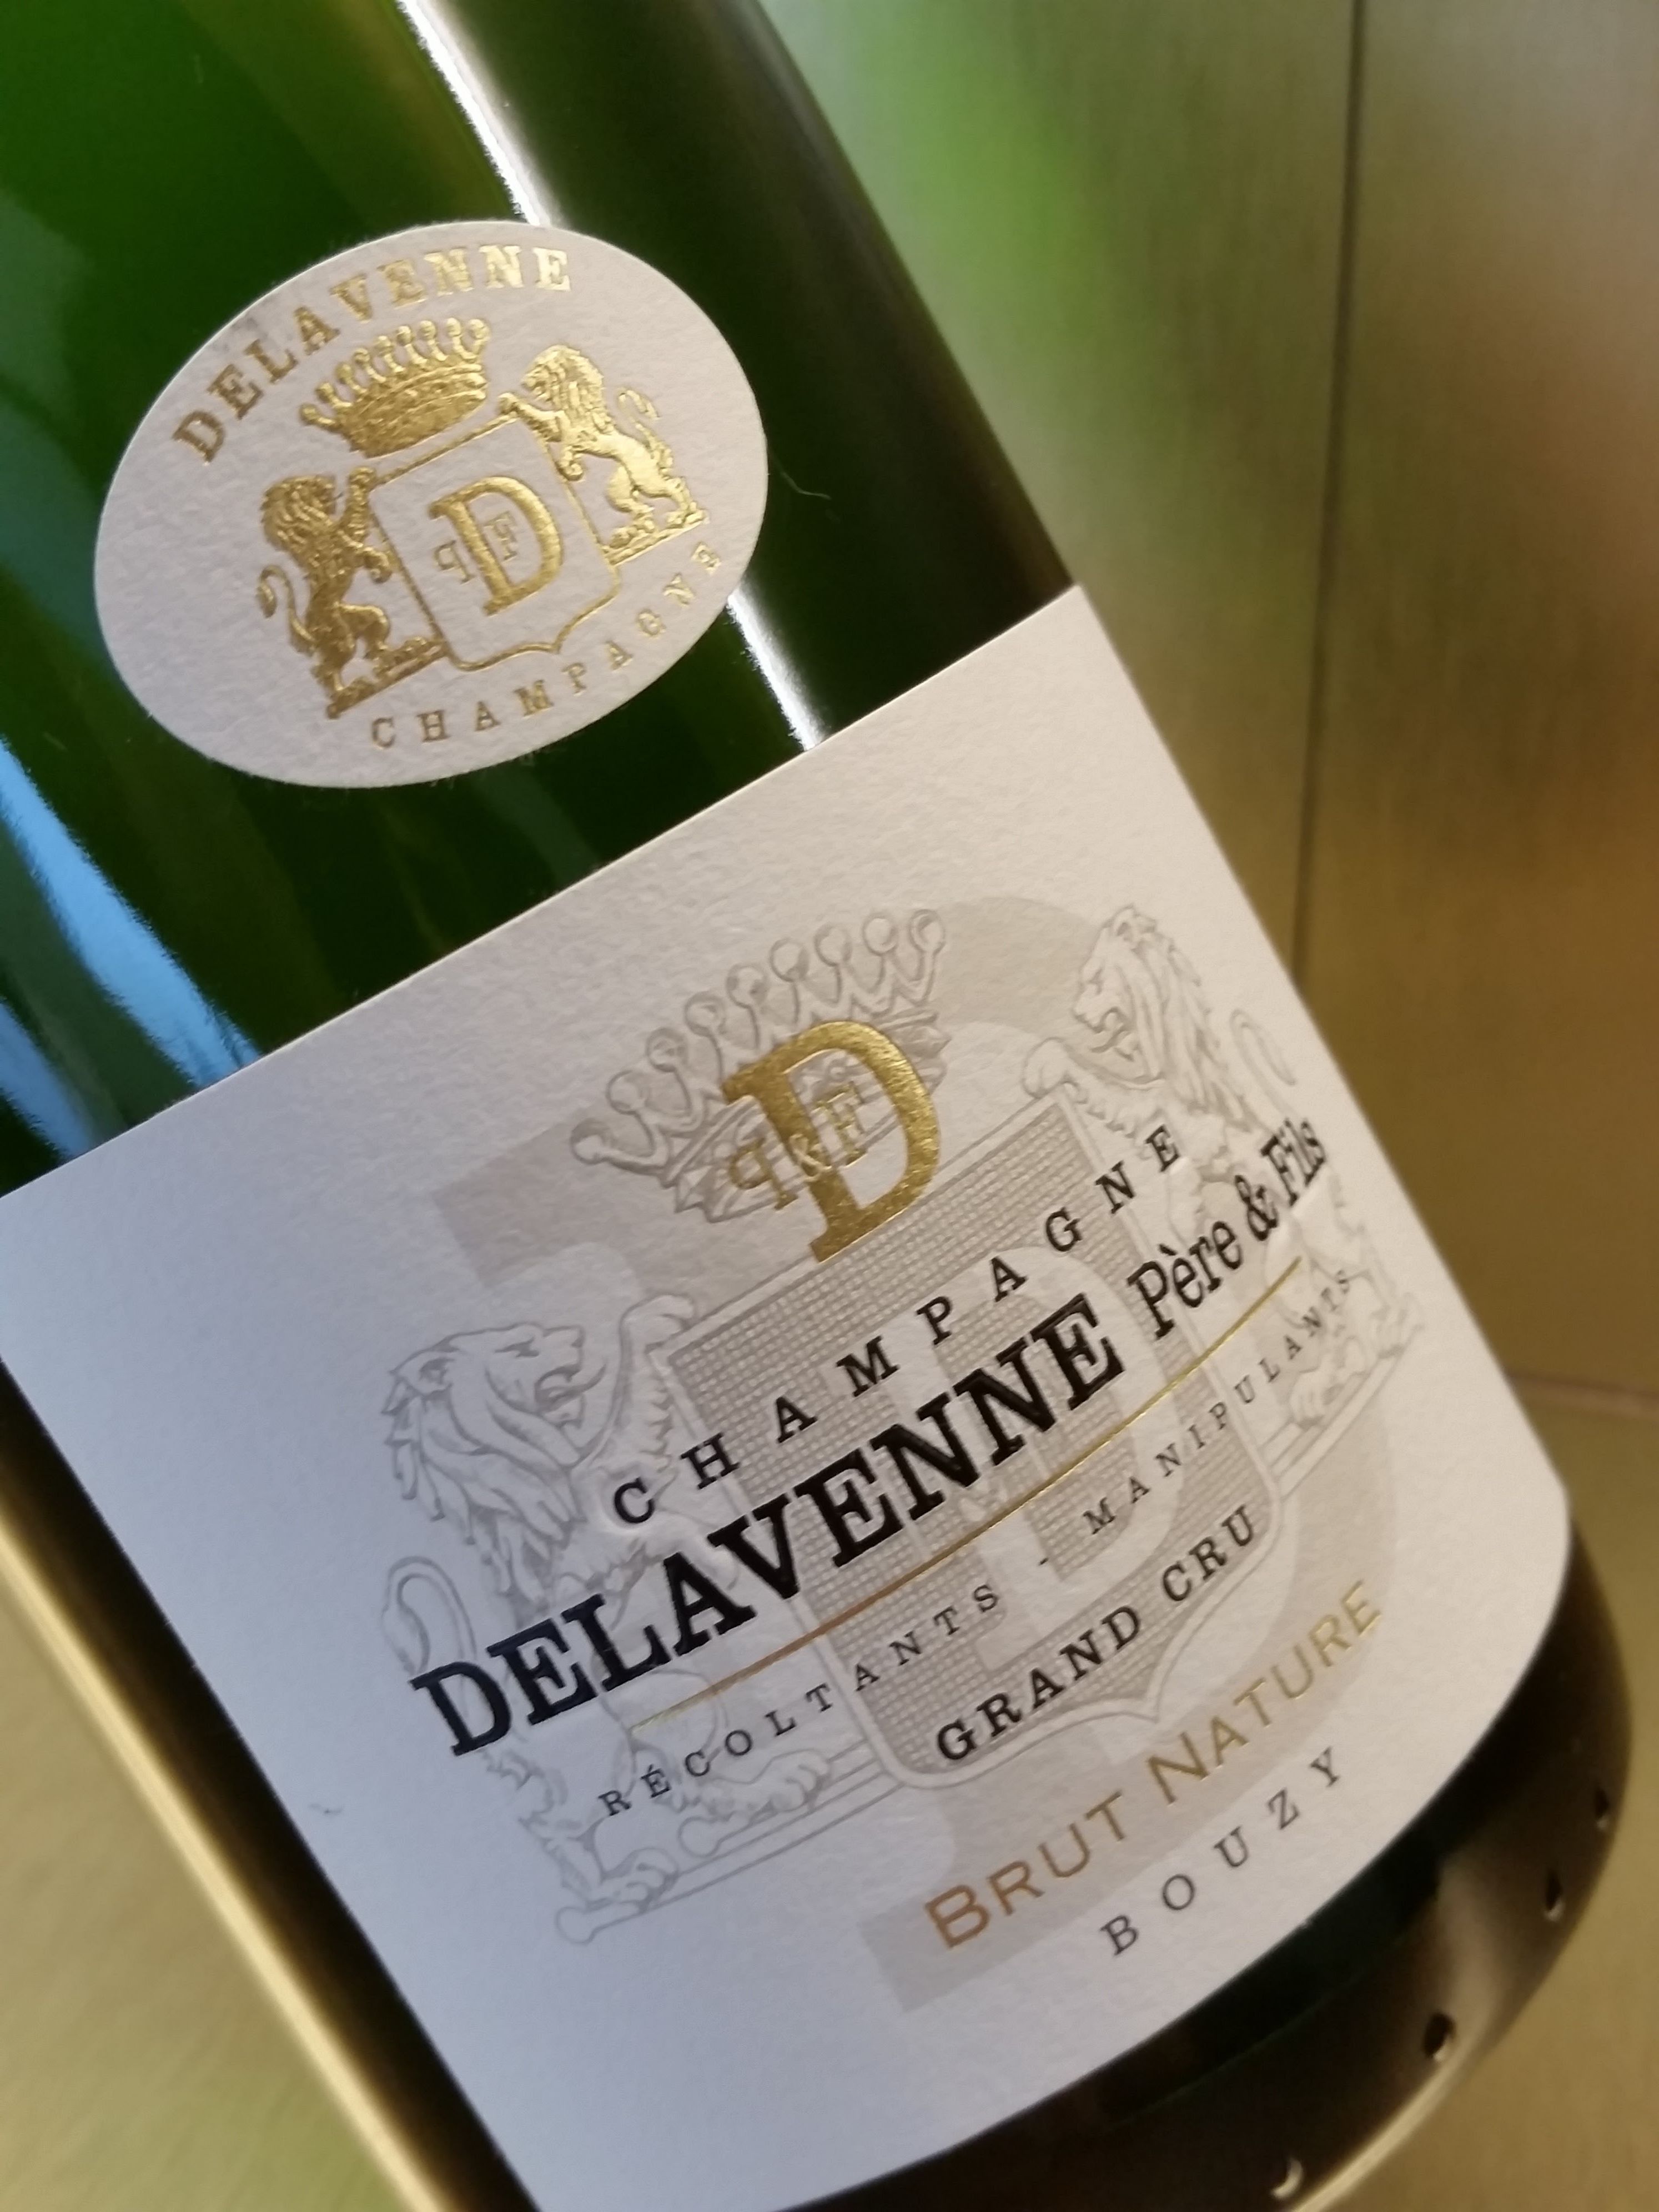 Champagne Delavenne Père & Fils, Bouzy, France 